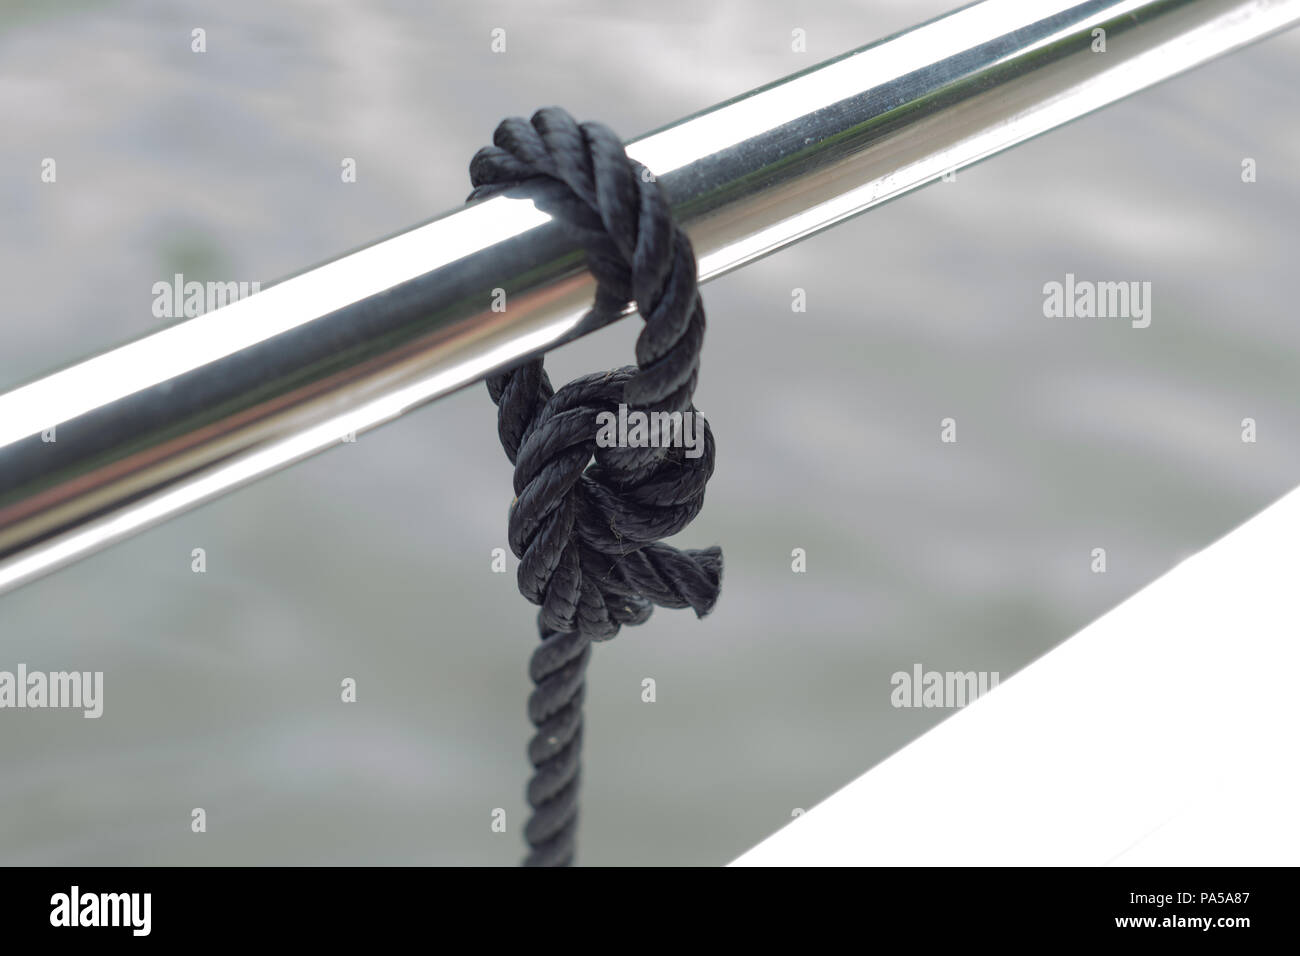 Una cuerda negra atada con un nudo alrededor de una rampa de metal brillante Foto de stock